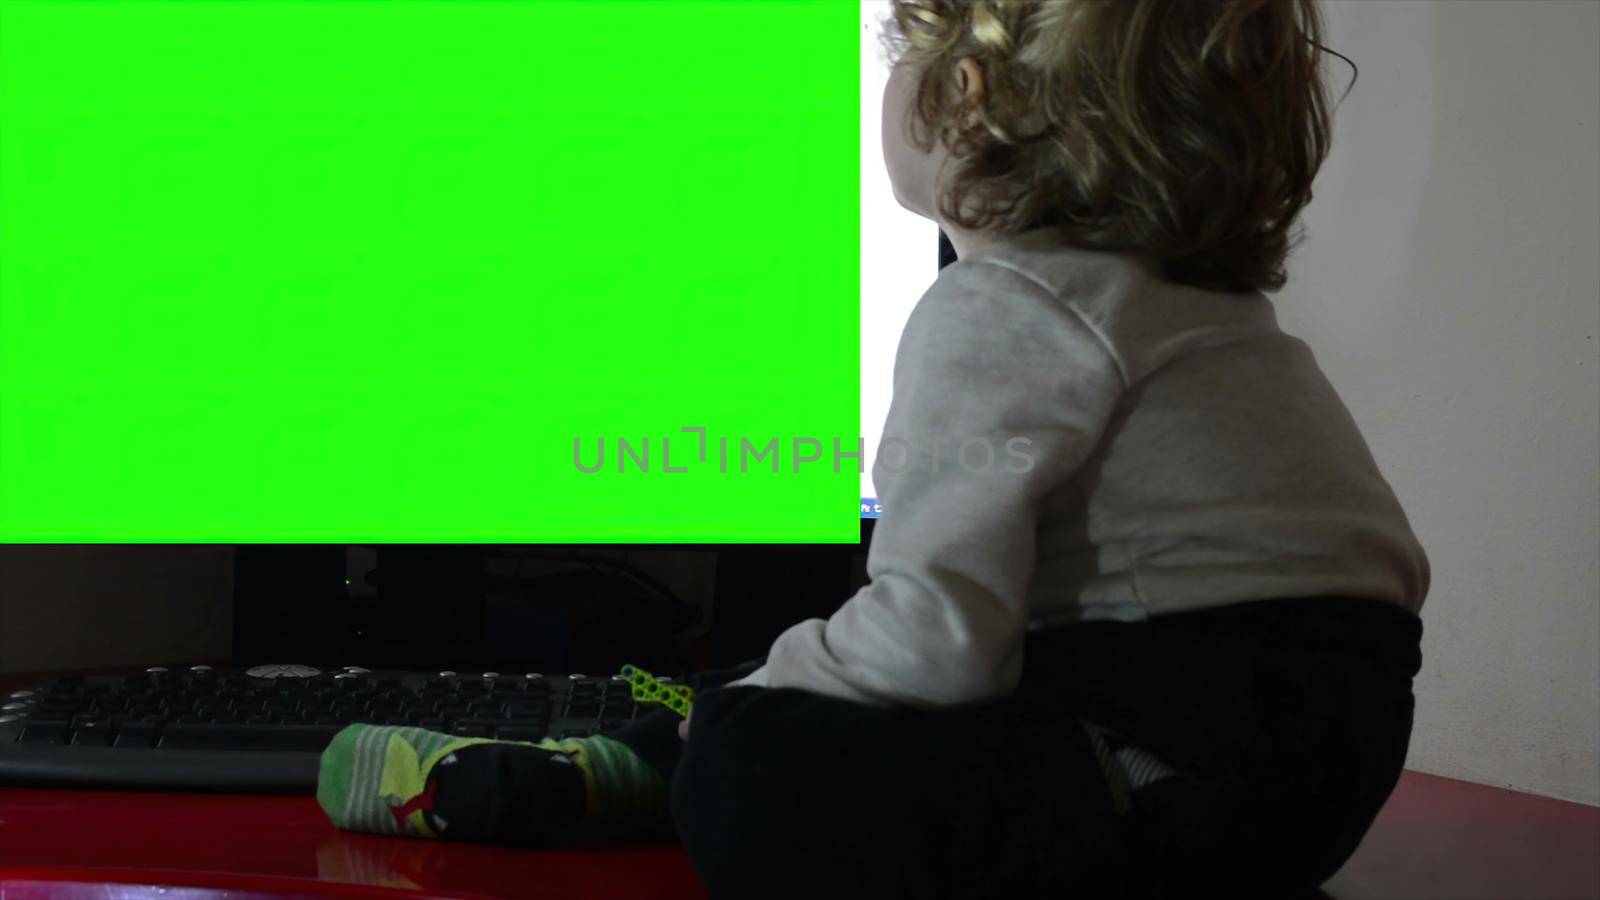 
3d illustration - Little boy watching TV,green screen